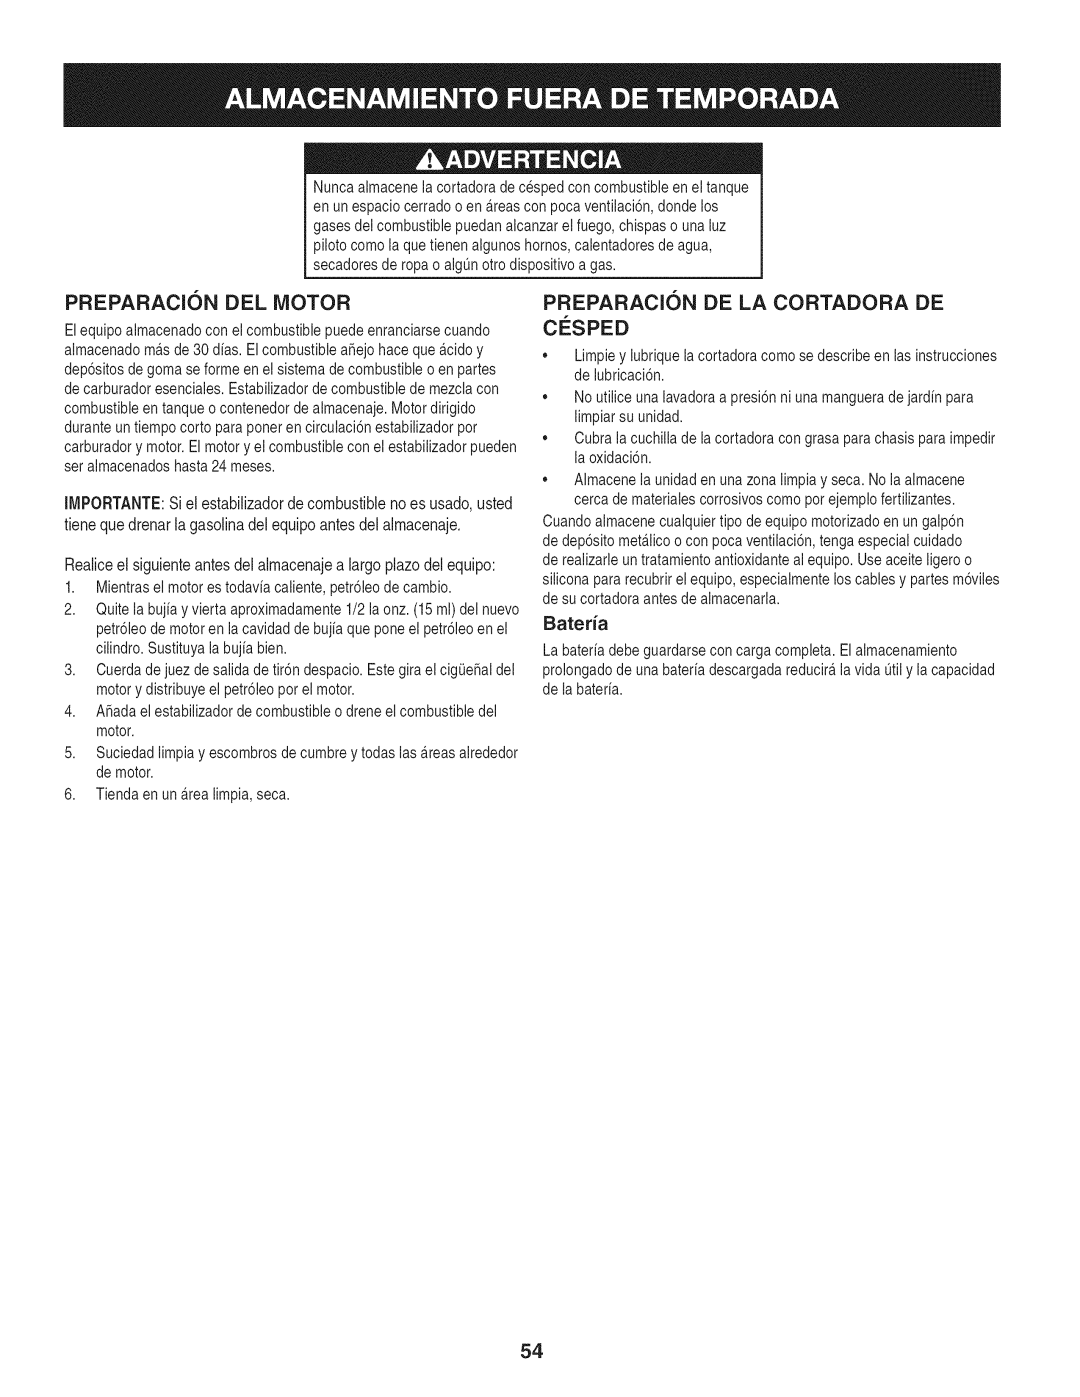 Craftsman 247.887210 manual Preparacion Del Motor, Preparacion De La Cortadora De, Cosped 